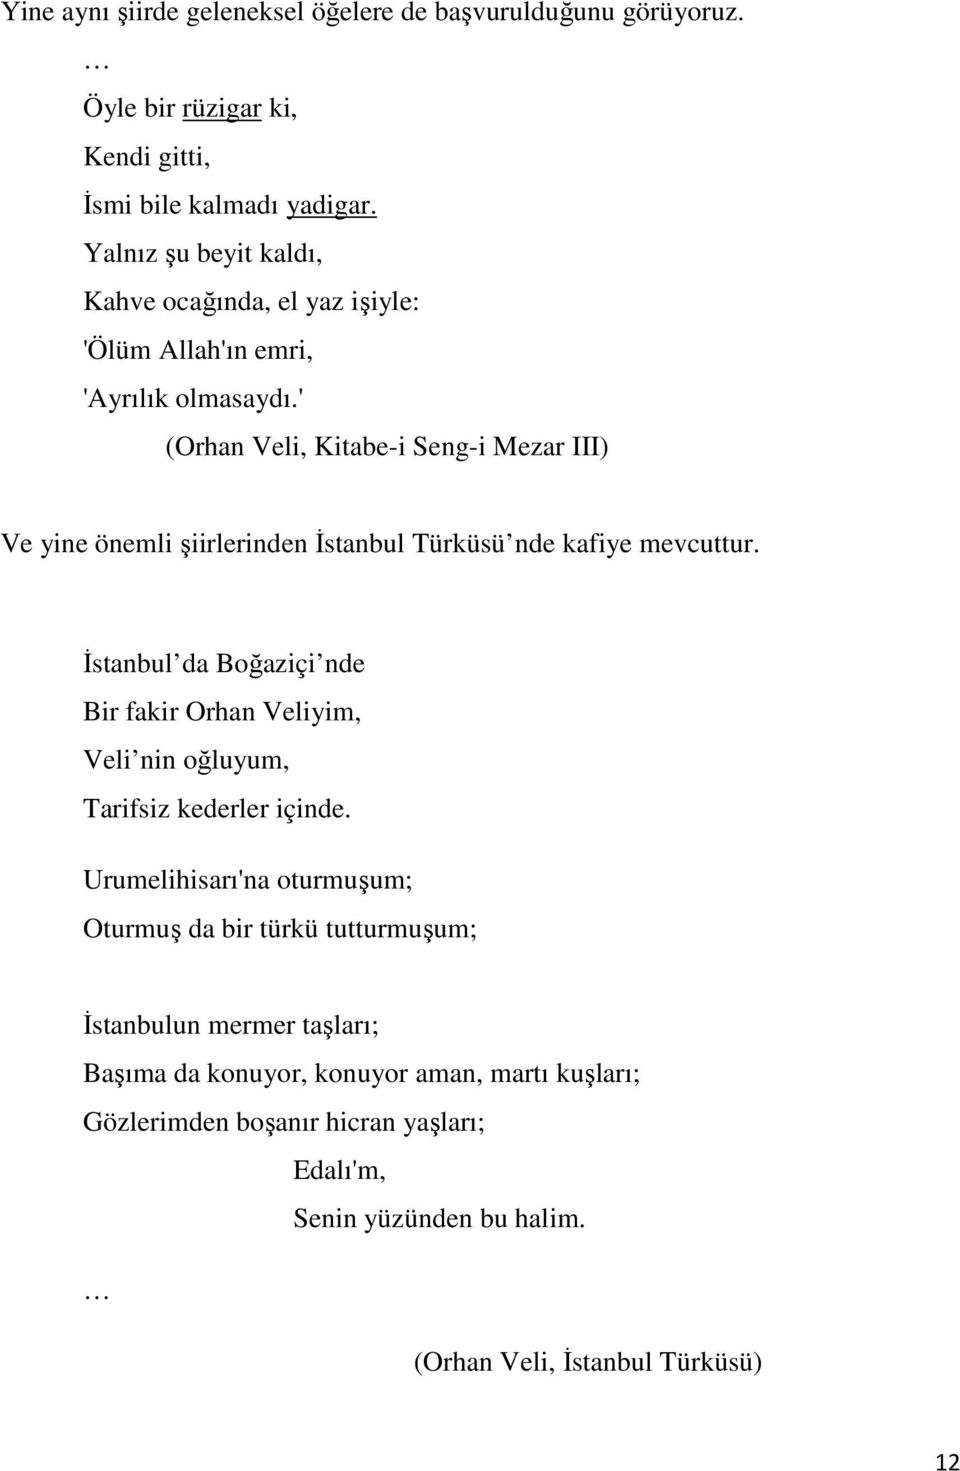 ' (Orhan Veli, Kitabe-i Seng-i Mezar III) Ve yine önemli şiirlerinden Đstanbul Türküsü nde kafiye mevcuttur.